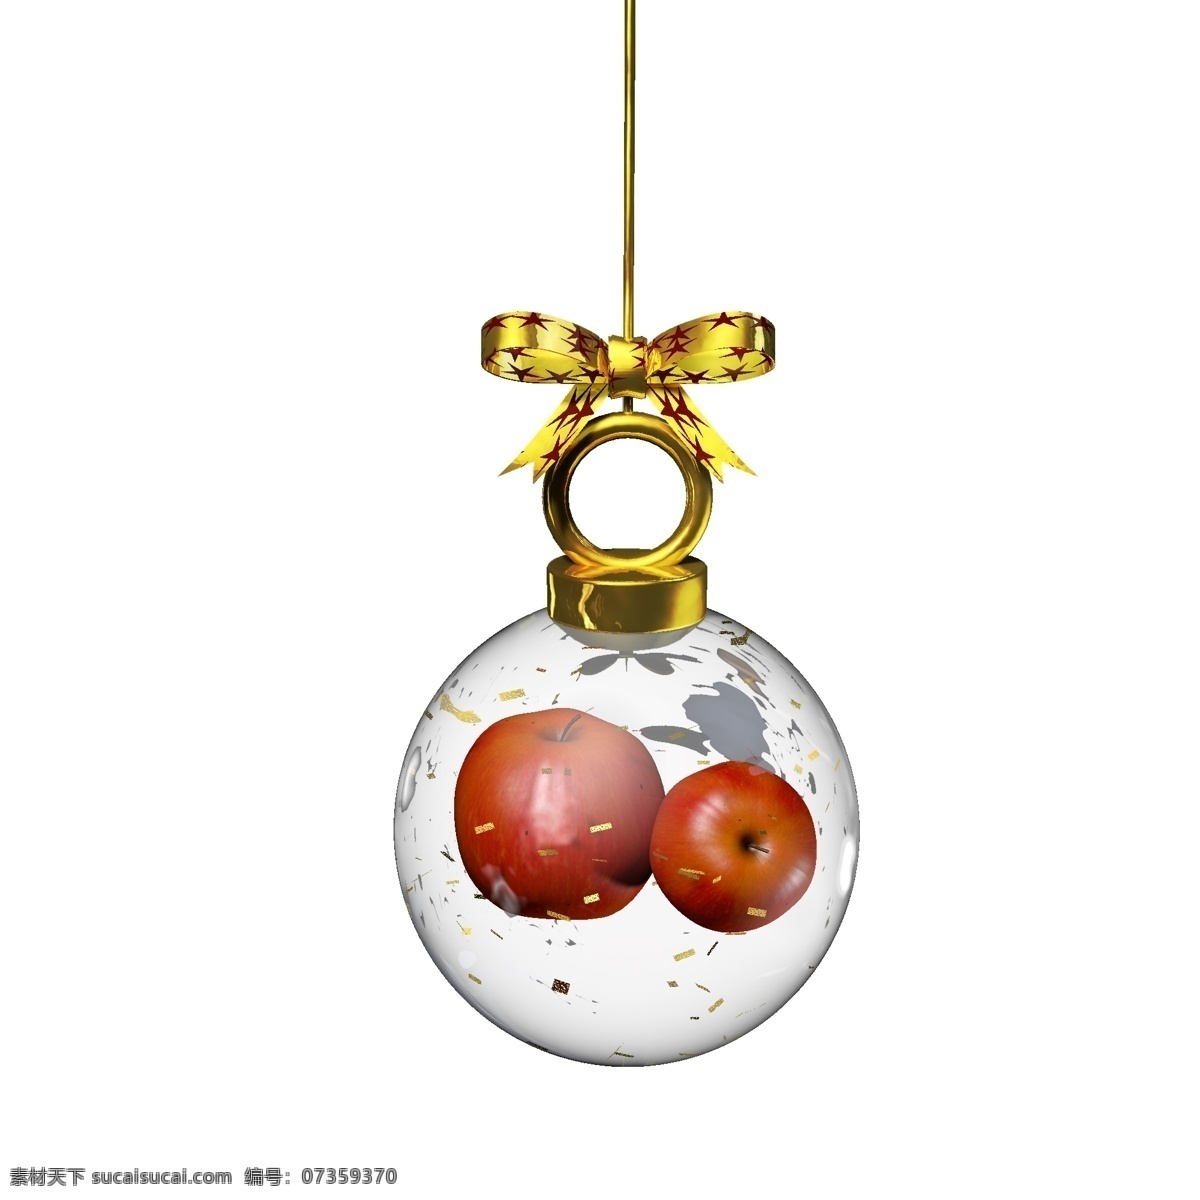 金色 圣诞 元素 水晶 玻璃球 挂件 苹果 彩色 卡通 红色 圣诞元素 平安果